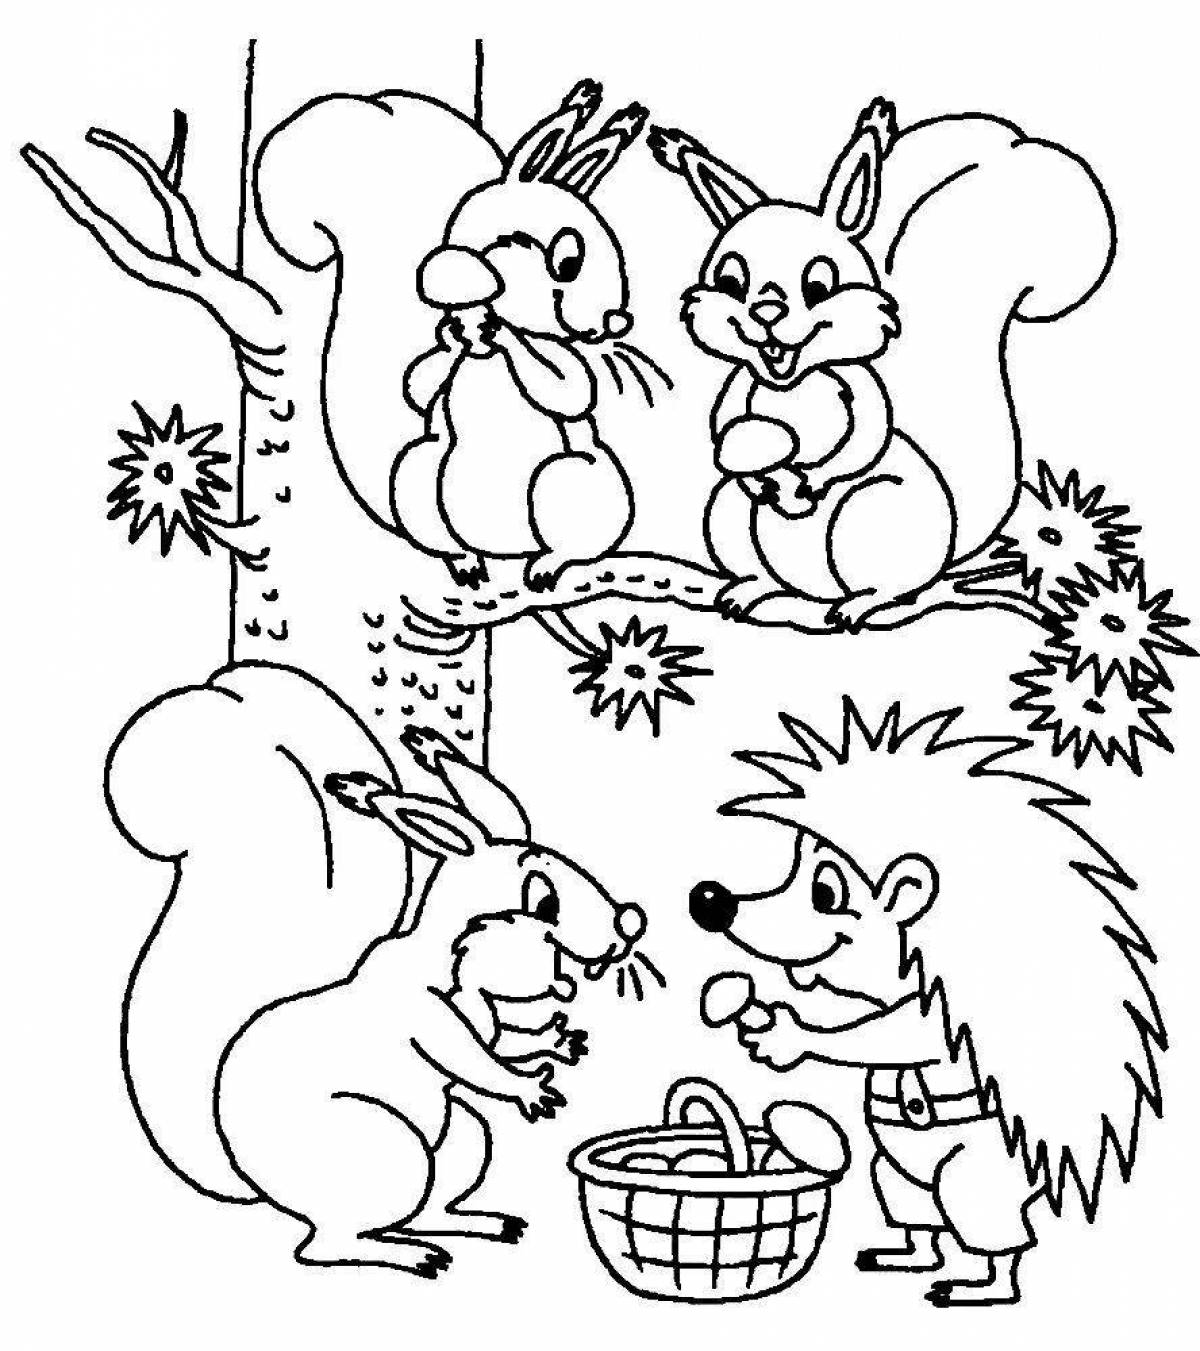 Увлекательная раскраска зимних животных для детей 3-4 лет